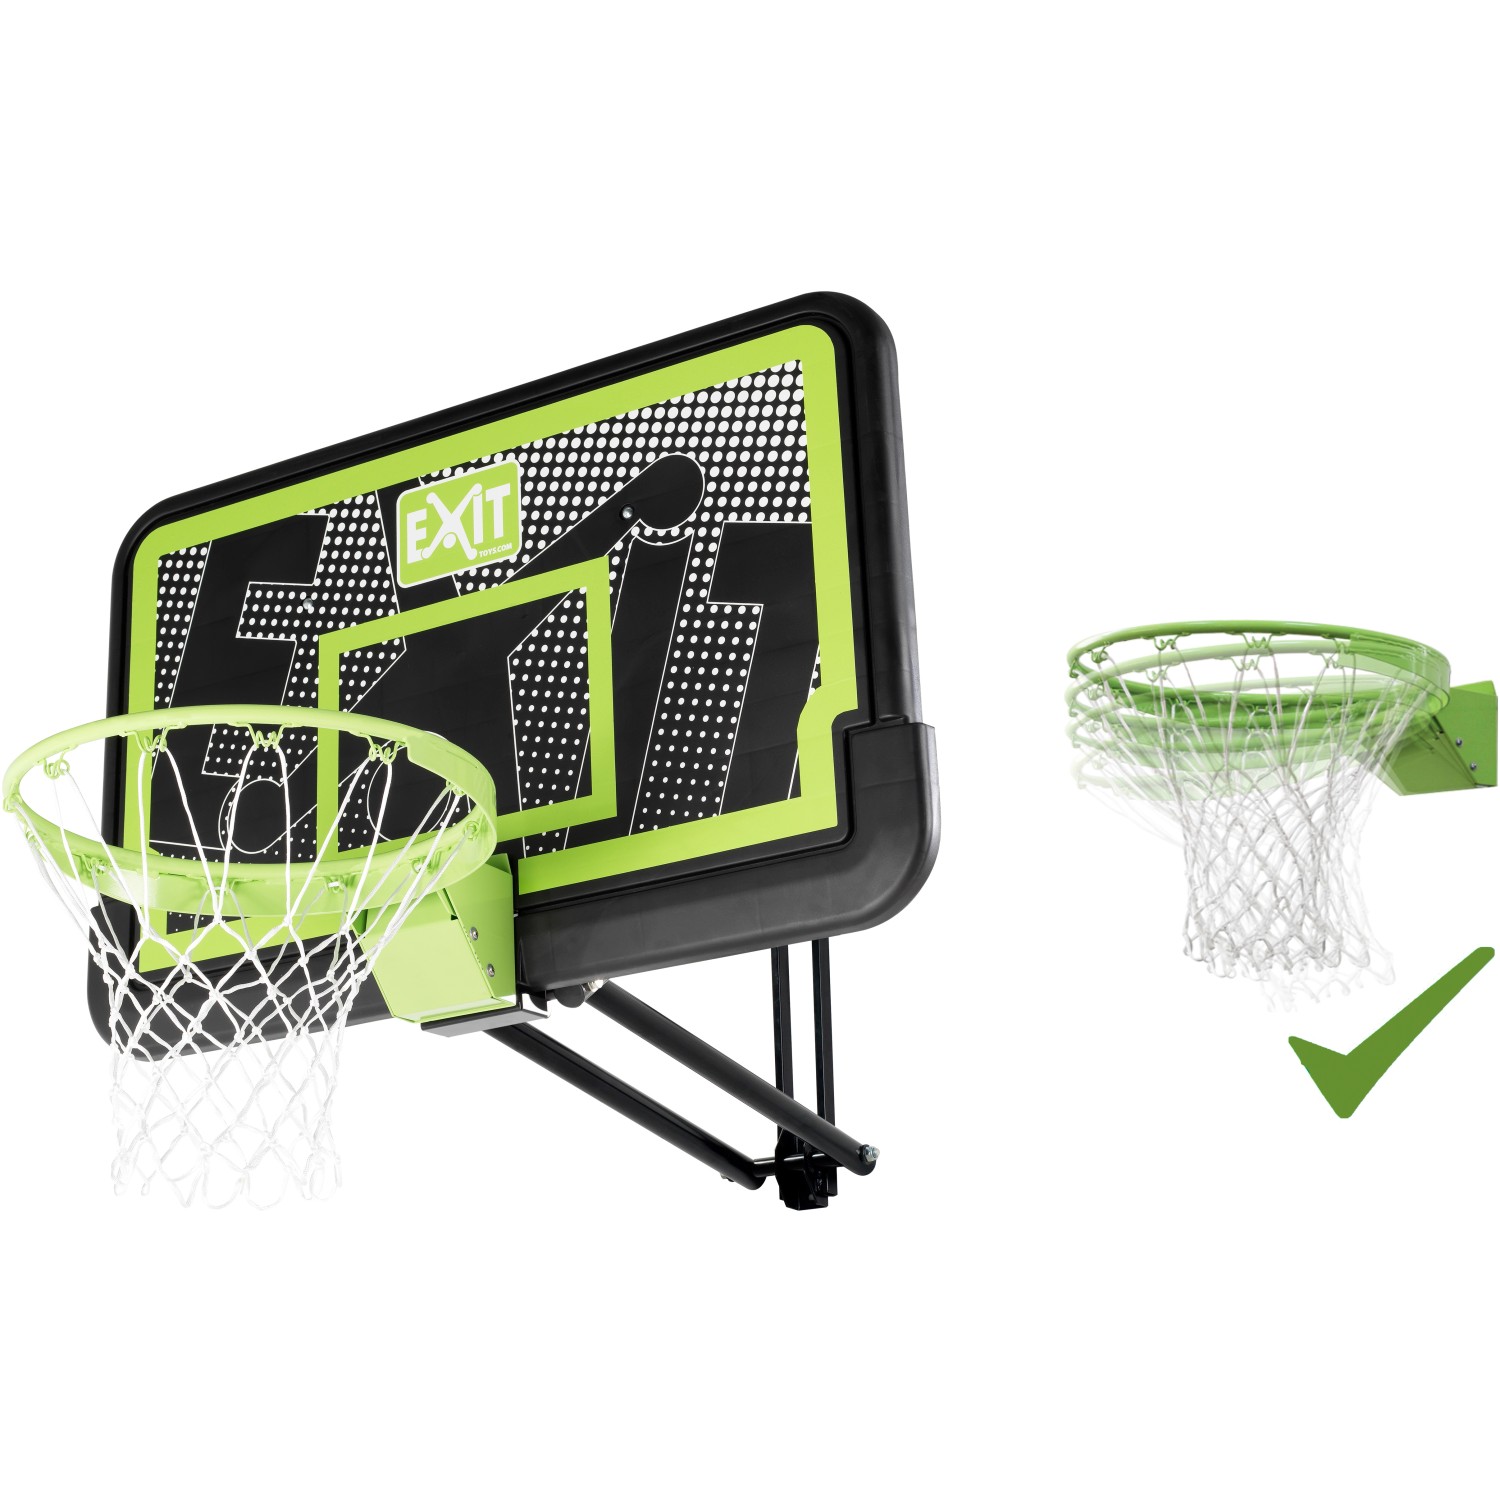 EXIT Galaxy Basketballkorb zur Wandmontage mit Dunkring - Black Edition von Exit Toys